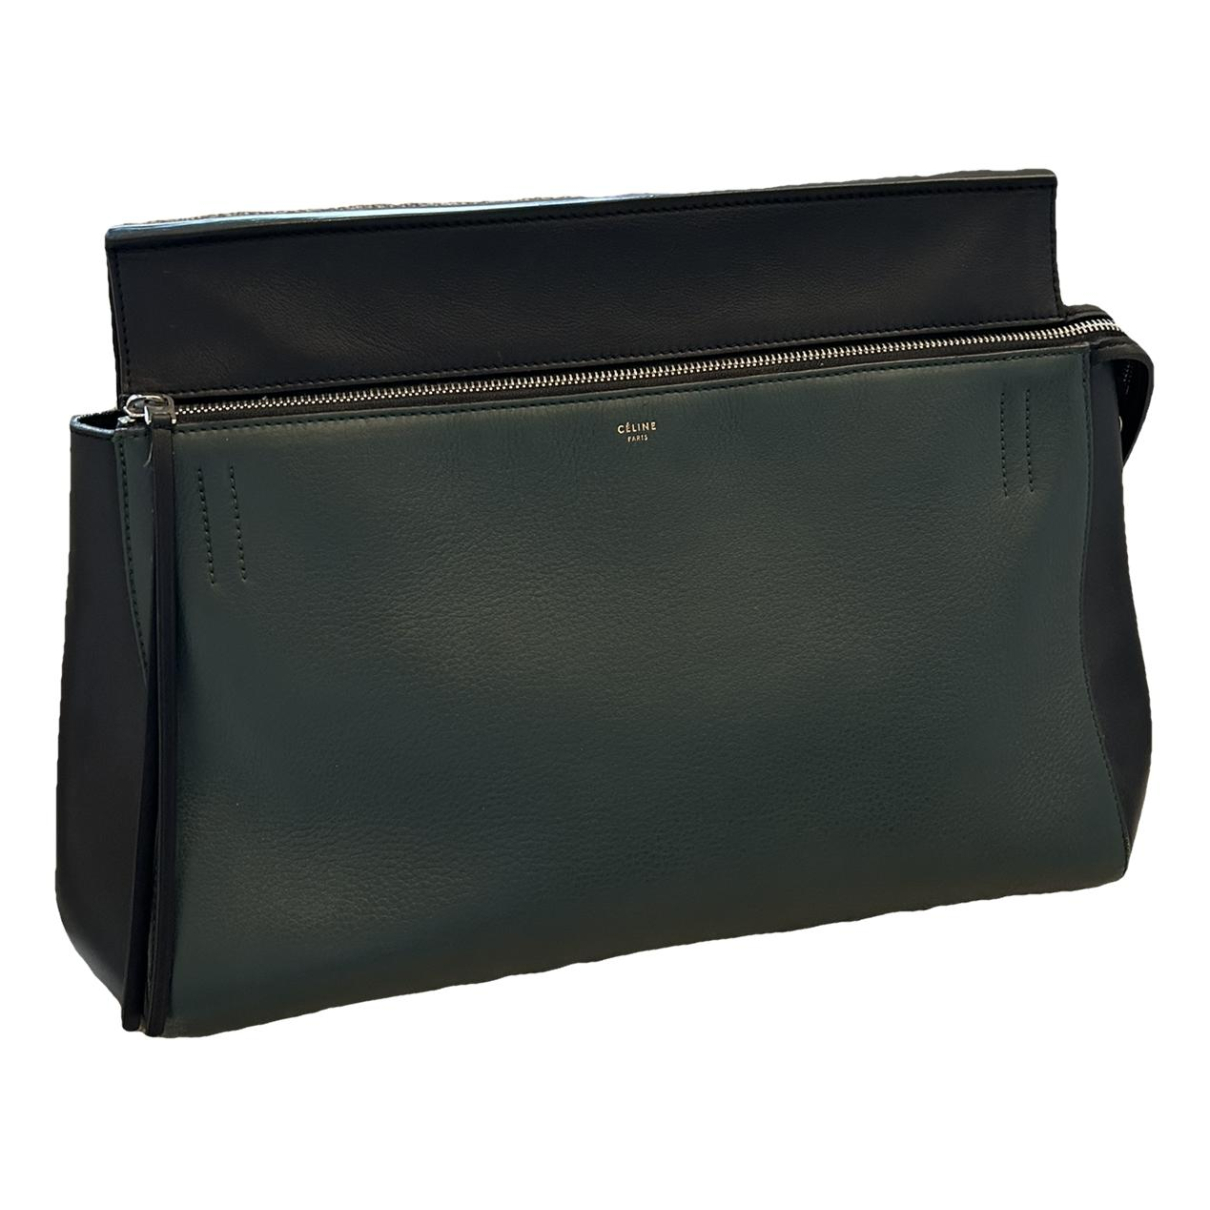 image of Celine Edge leather handbag